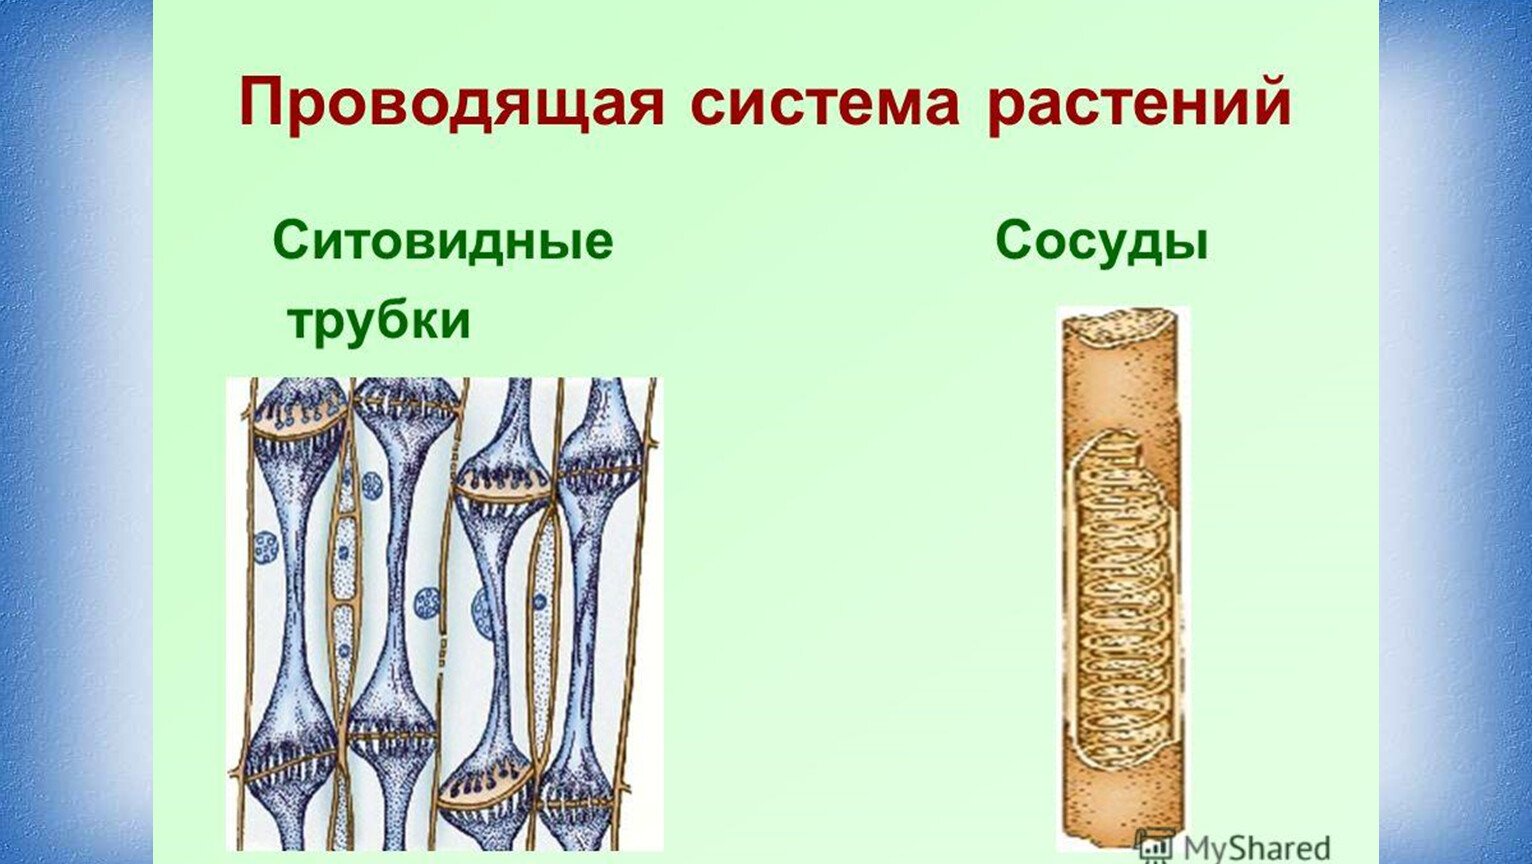 Проводящие ткани растений ситовидные трубки и. Ситовидные трубки и сосуды биология 6. Ткани растений сосуды и ситовидные трубки. Проводящие ткани сосуды и ситовидные трубки. Проводящая ткань растений ситовидные трубки.